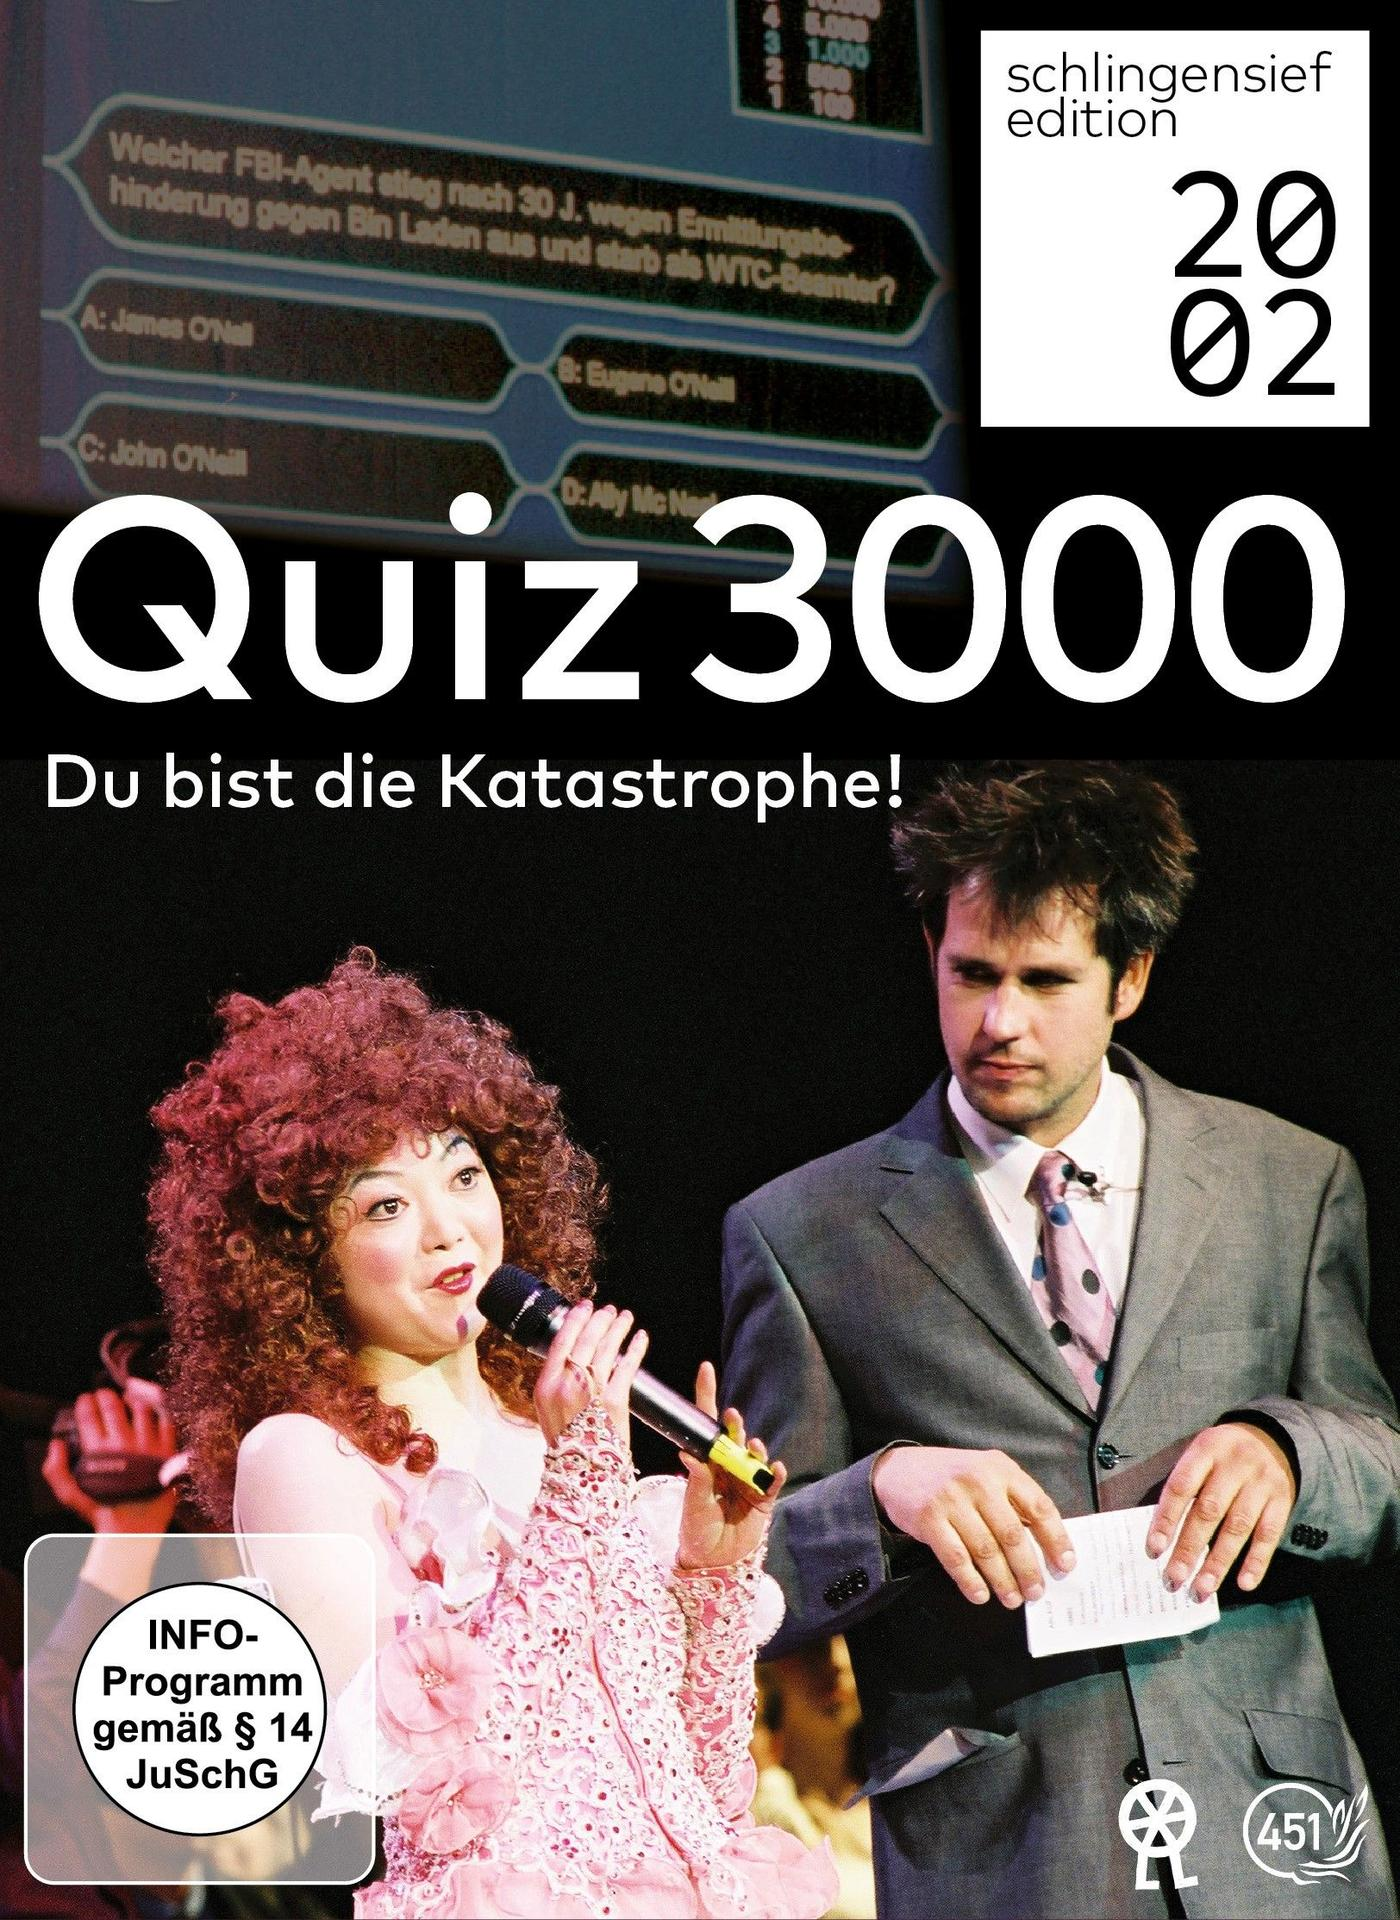 3000-Du (2 DVDs) Katastrophe! bist Quiz DVD die